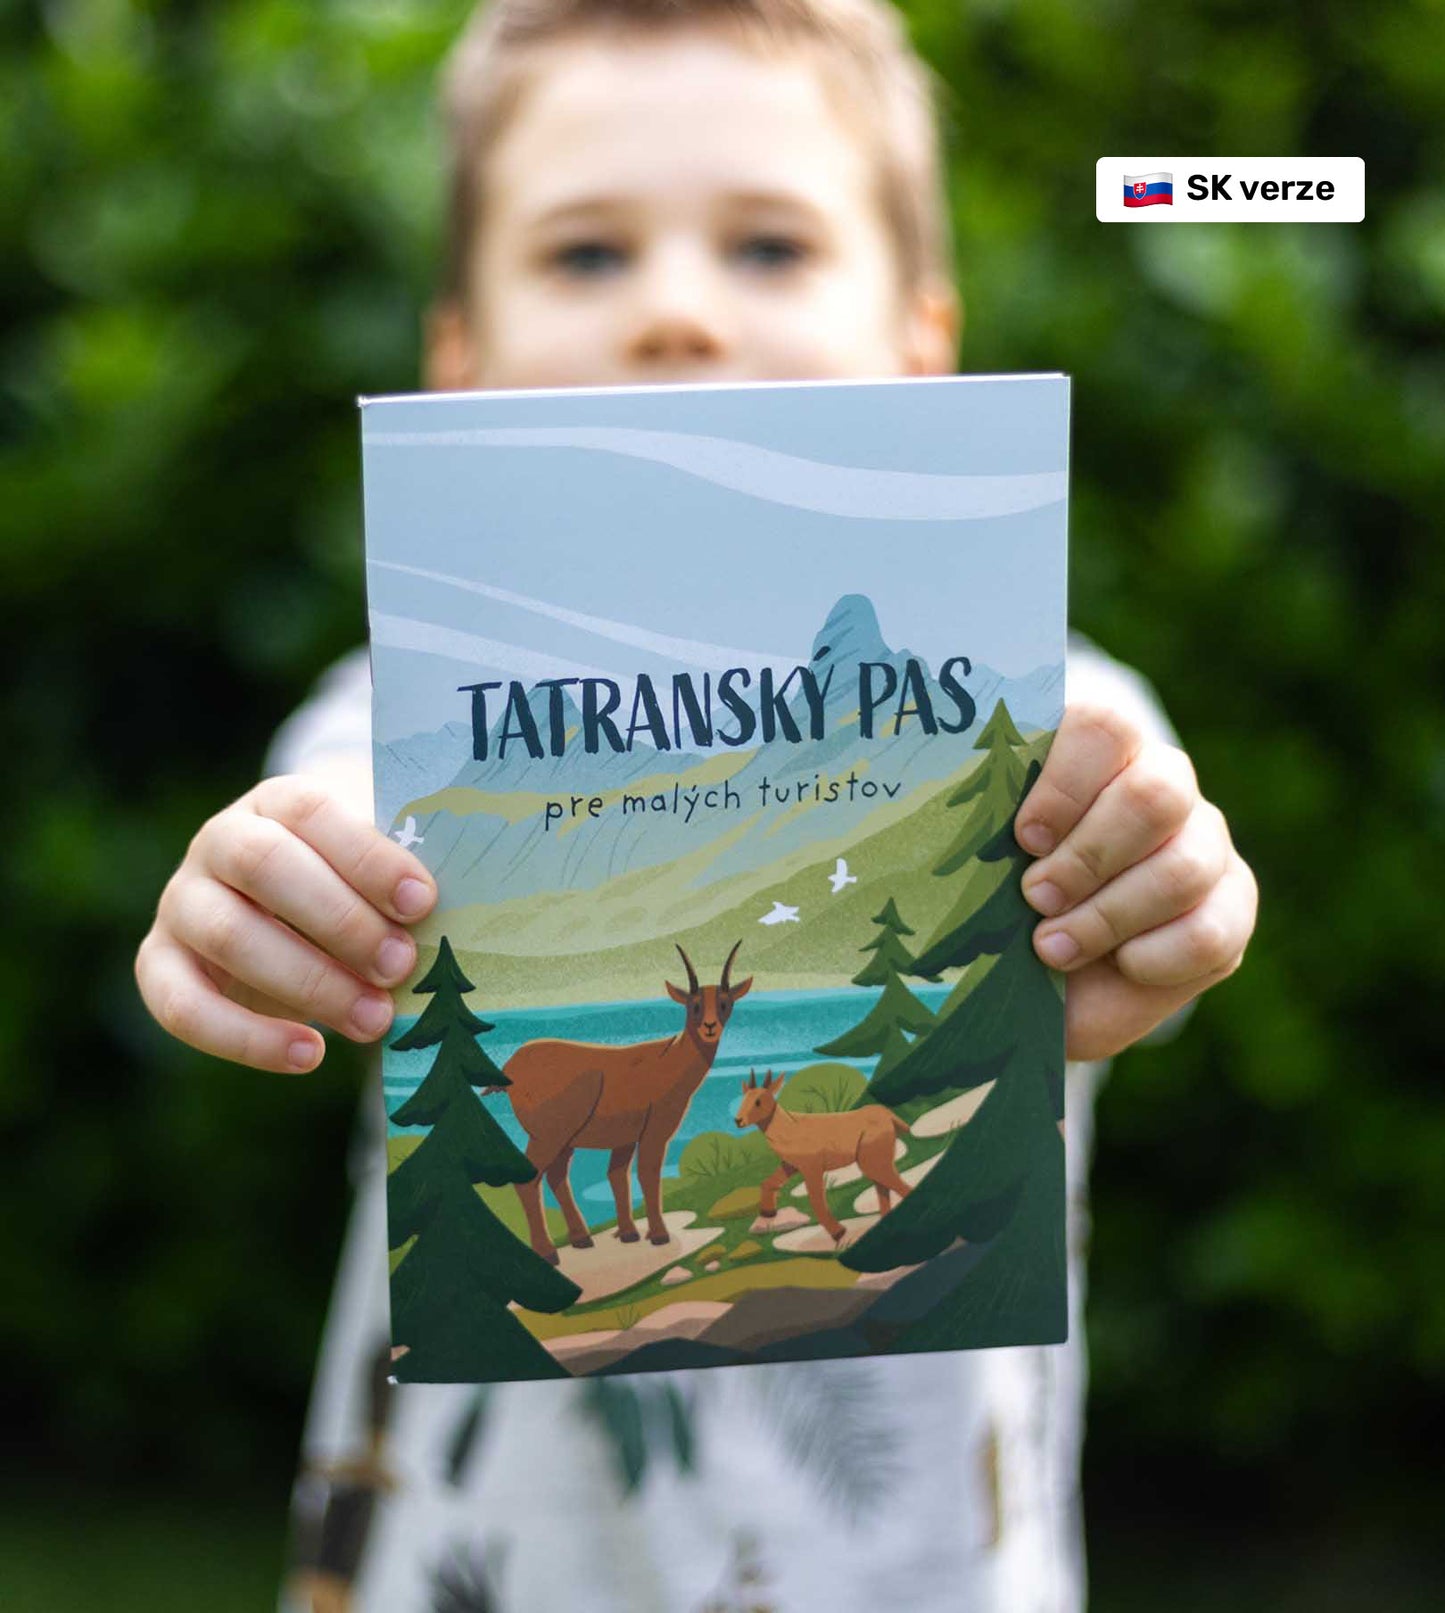 Dětský Tatranský pas (SK verze)